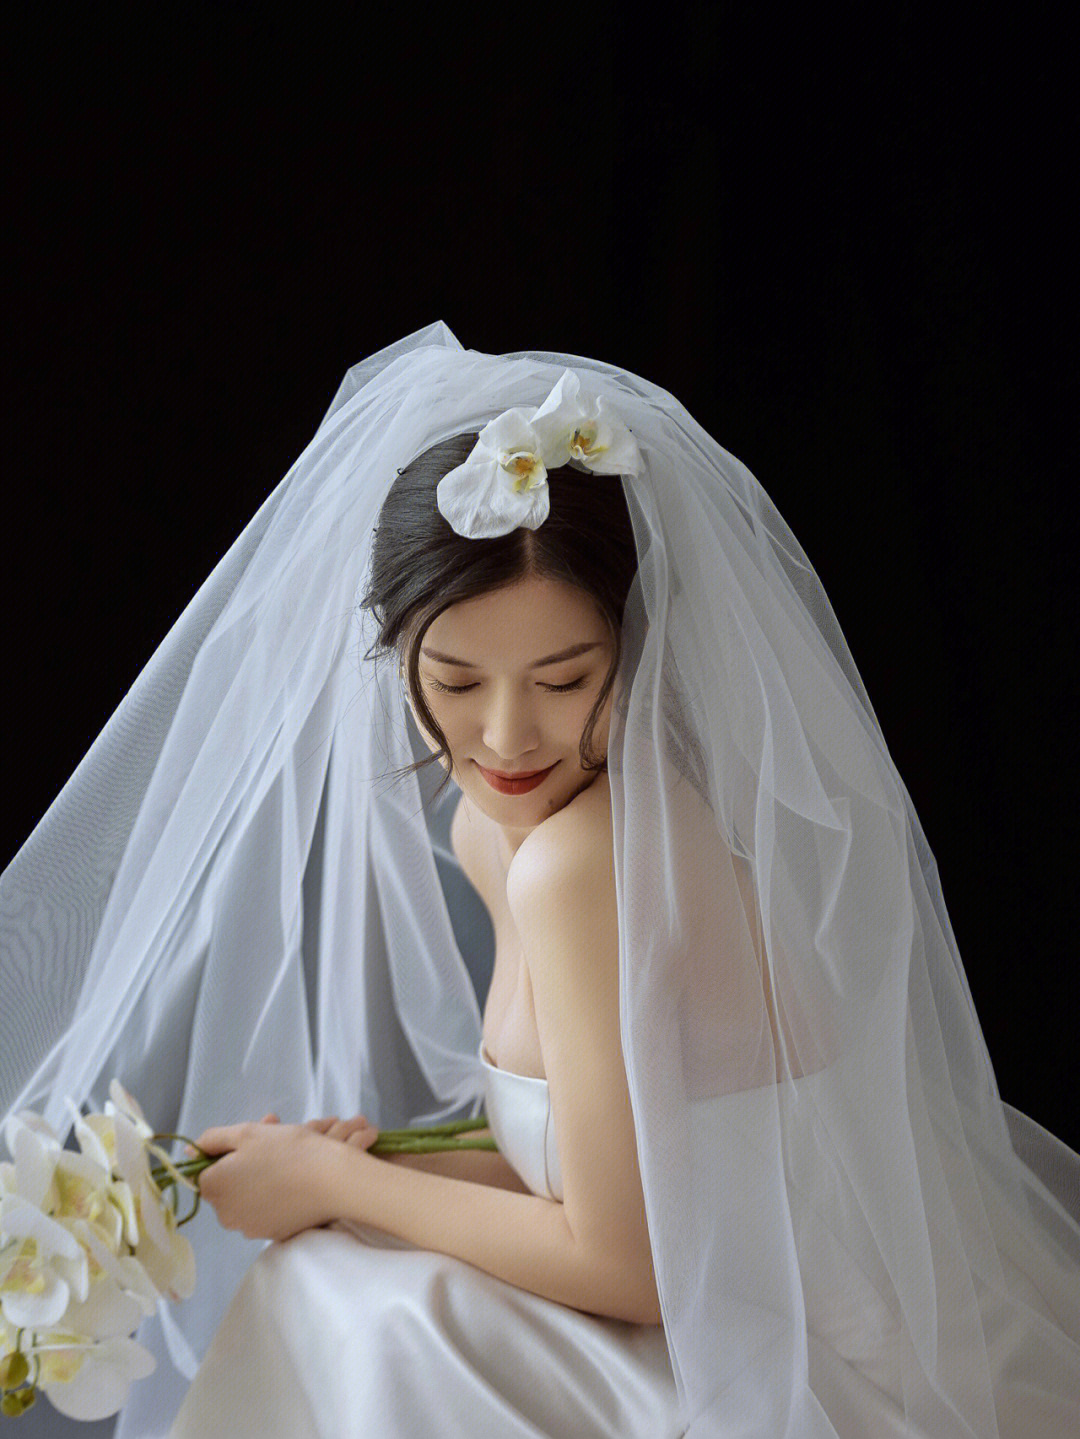 婚纱照新娘特写丨最美新娘丨韩式婚纱照丨简约婚纱照丨唯美婚纱照丨